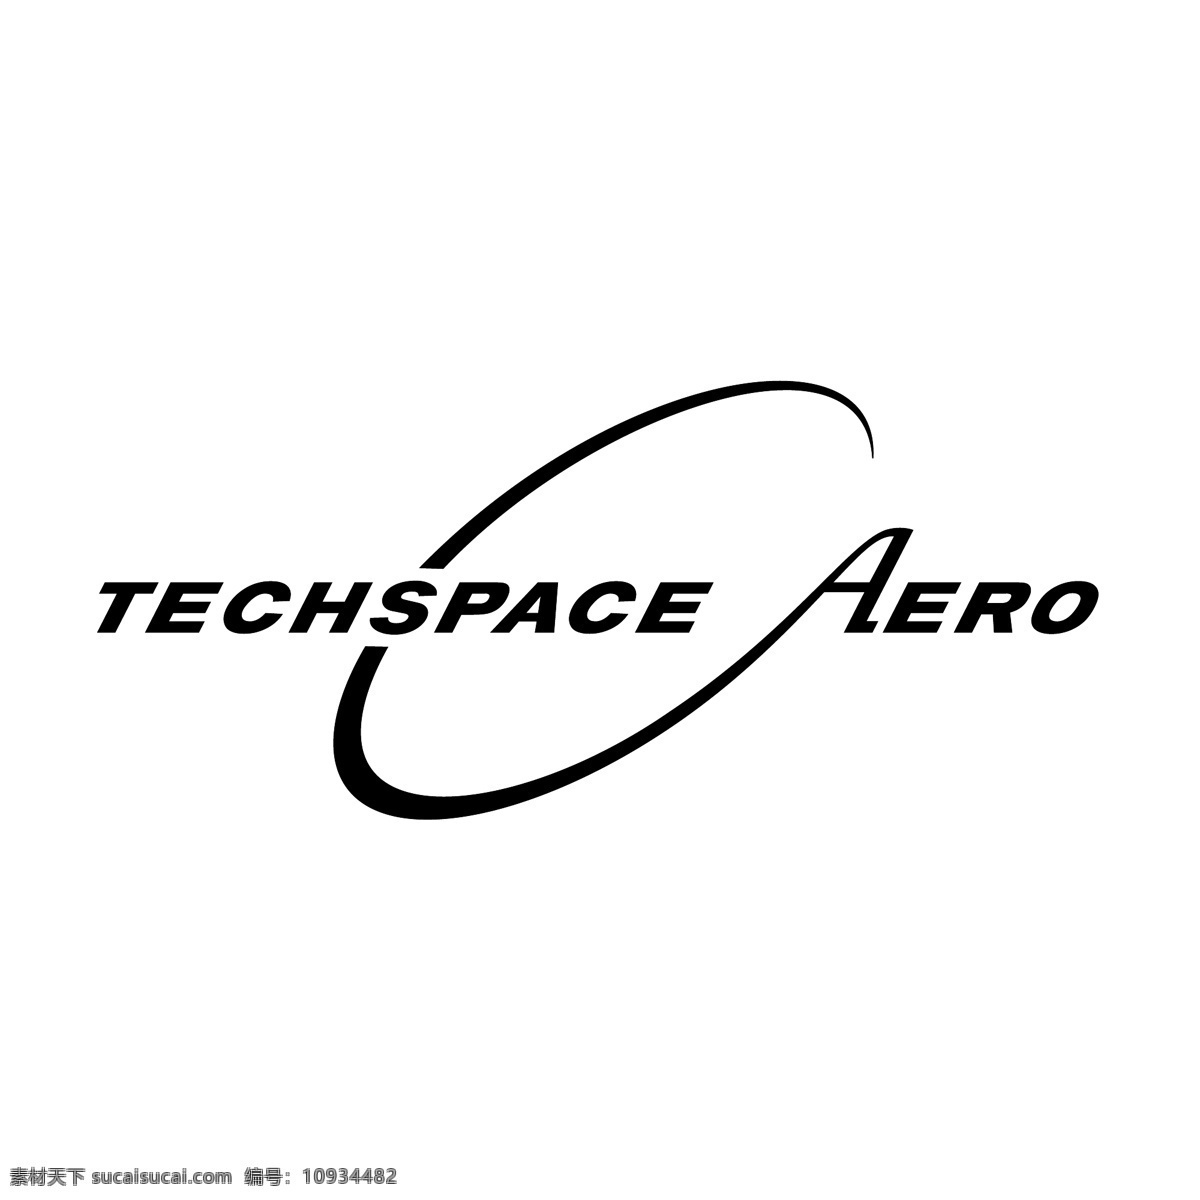 航空 图形 techspace 航空航天 科技 公司 矢量 航空技术 气动 艺术 自由 标志 向量 矢量图 建筑家居